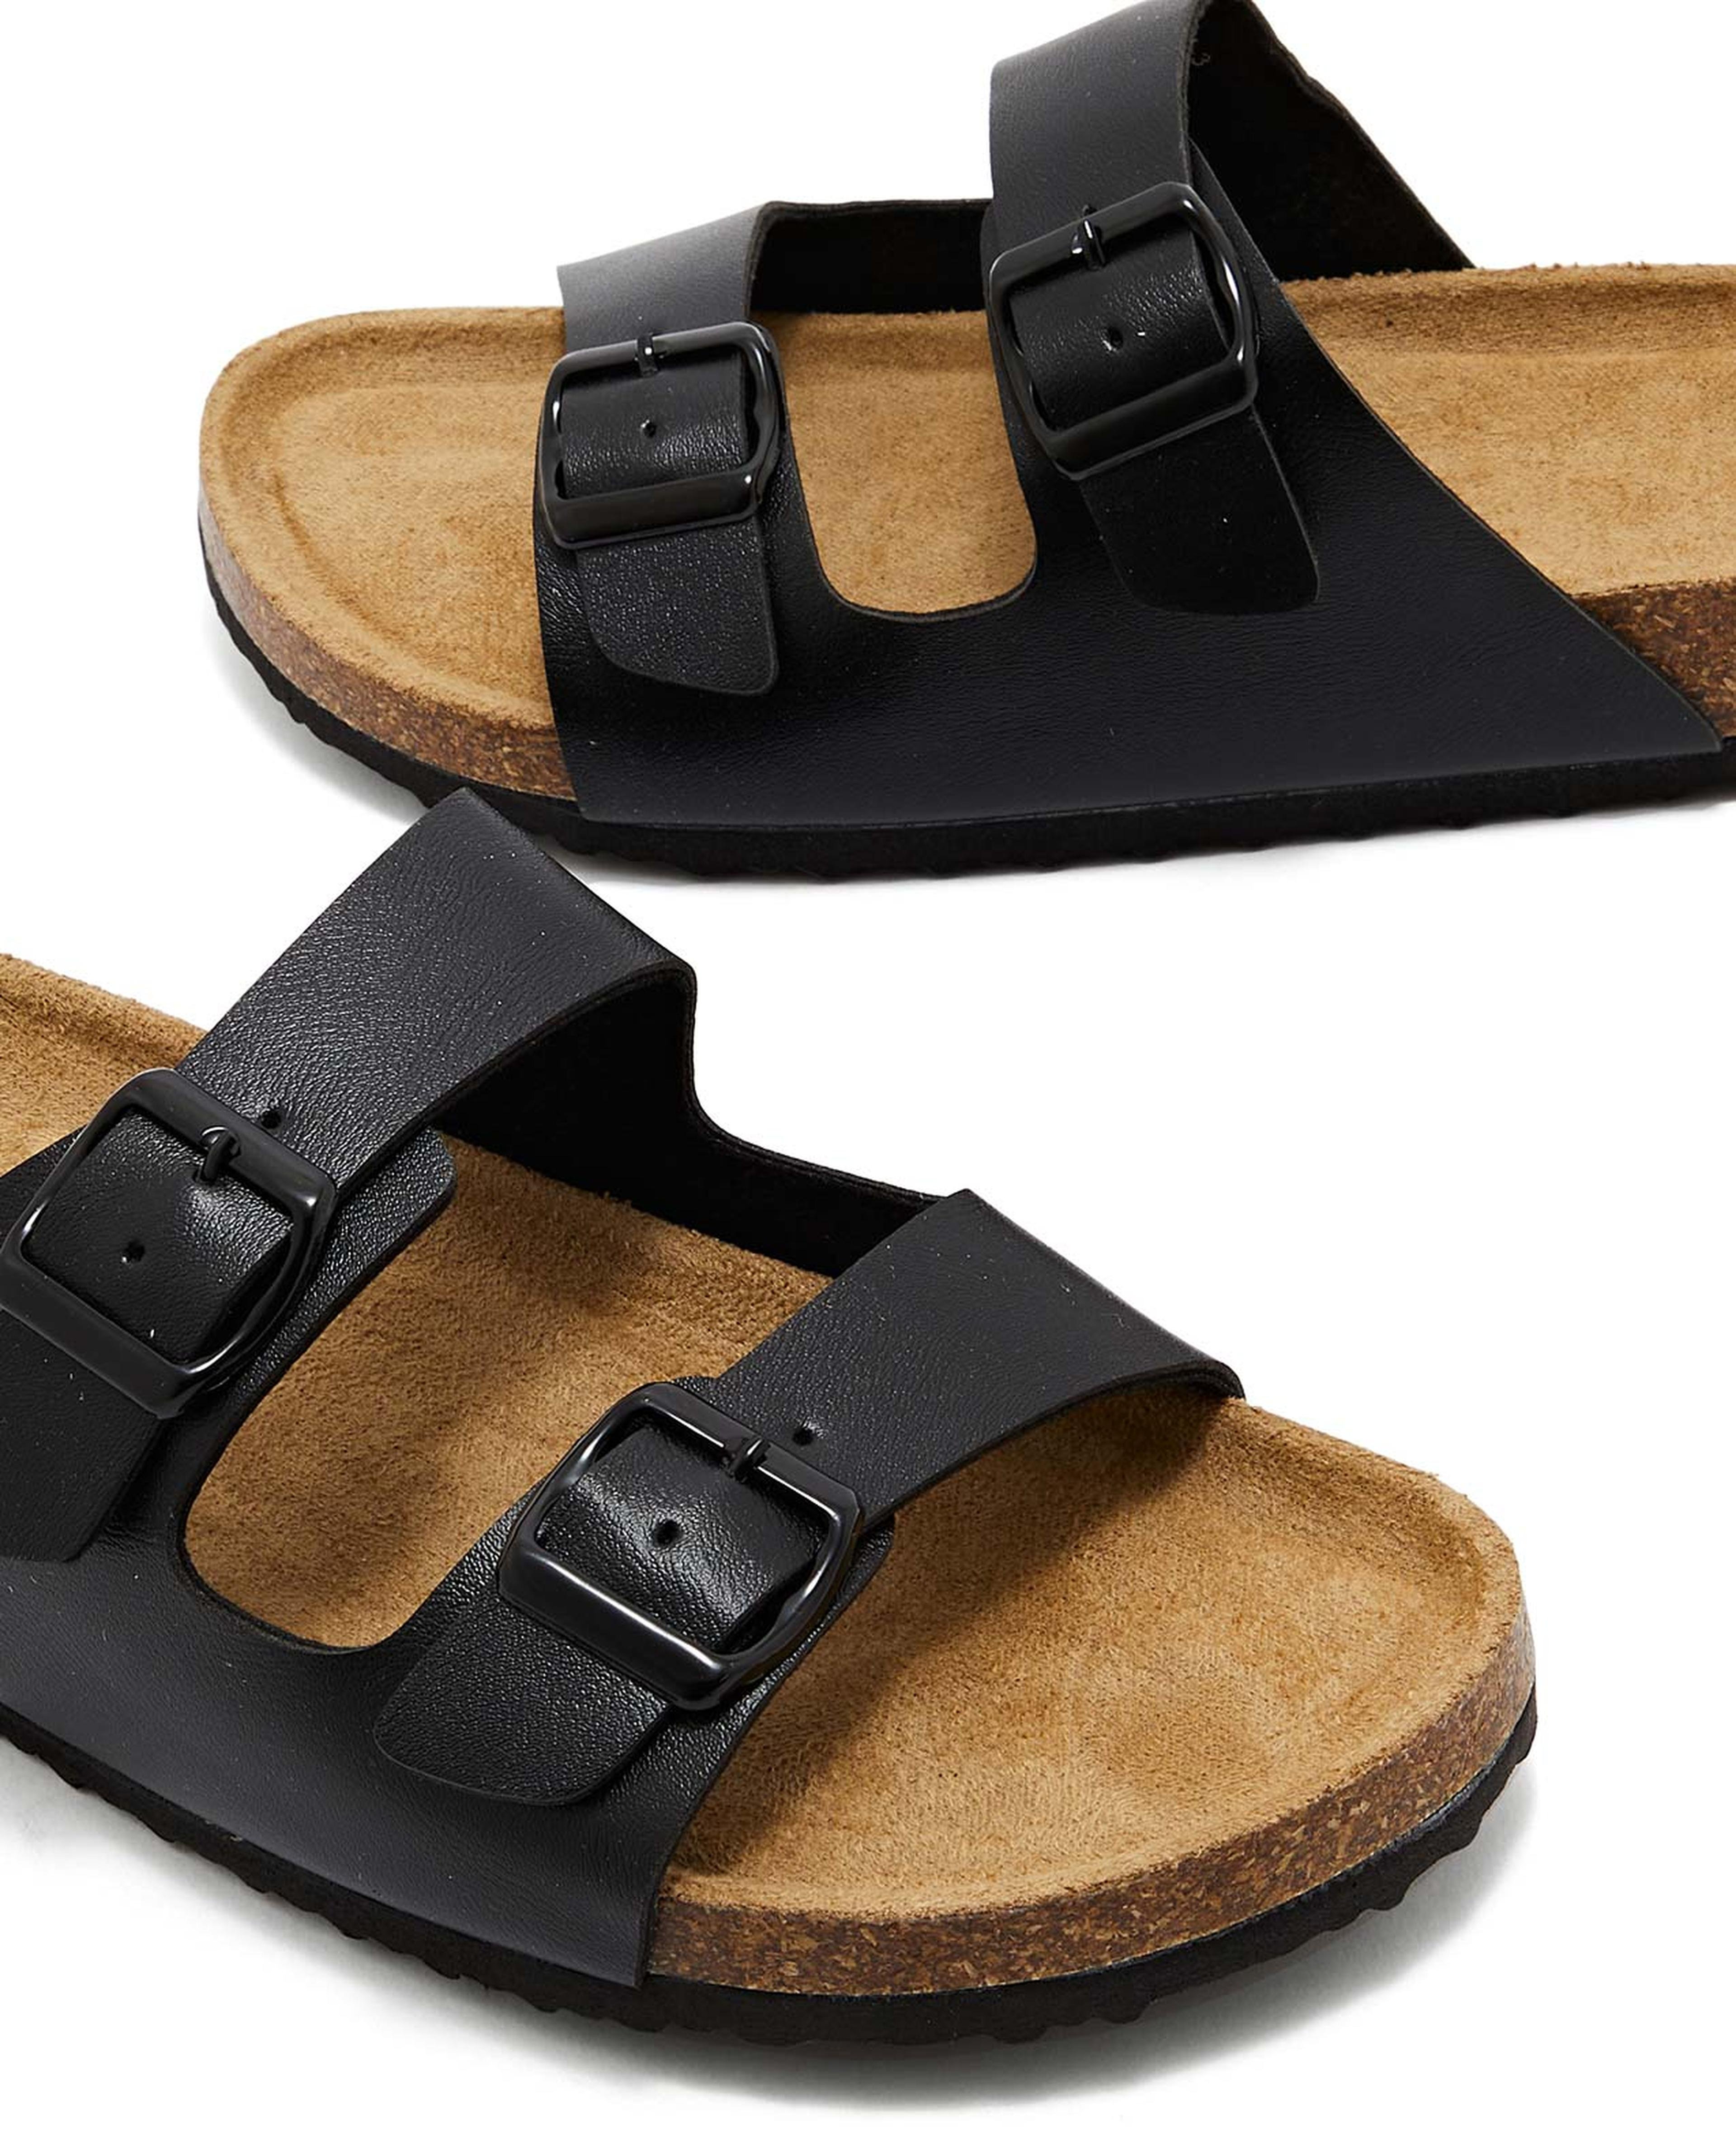 Double Strap Comfort Sandals